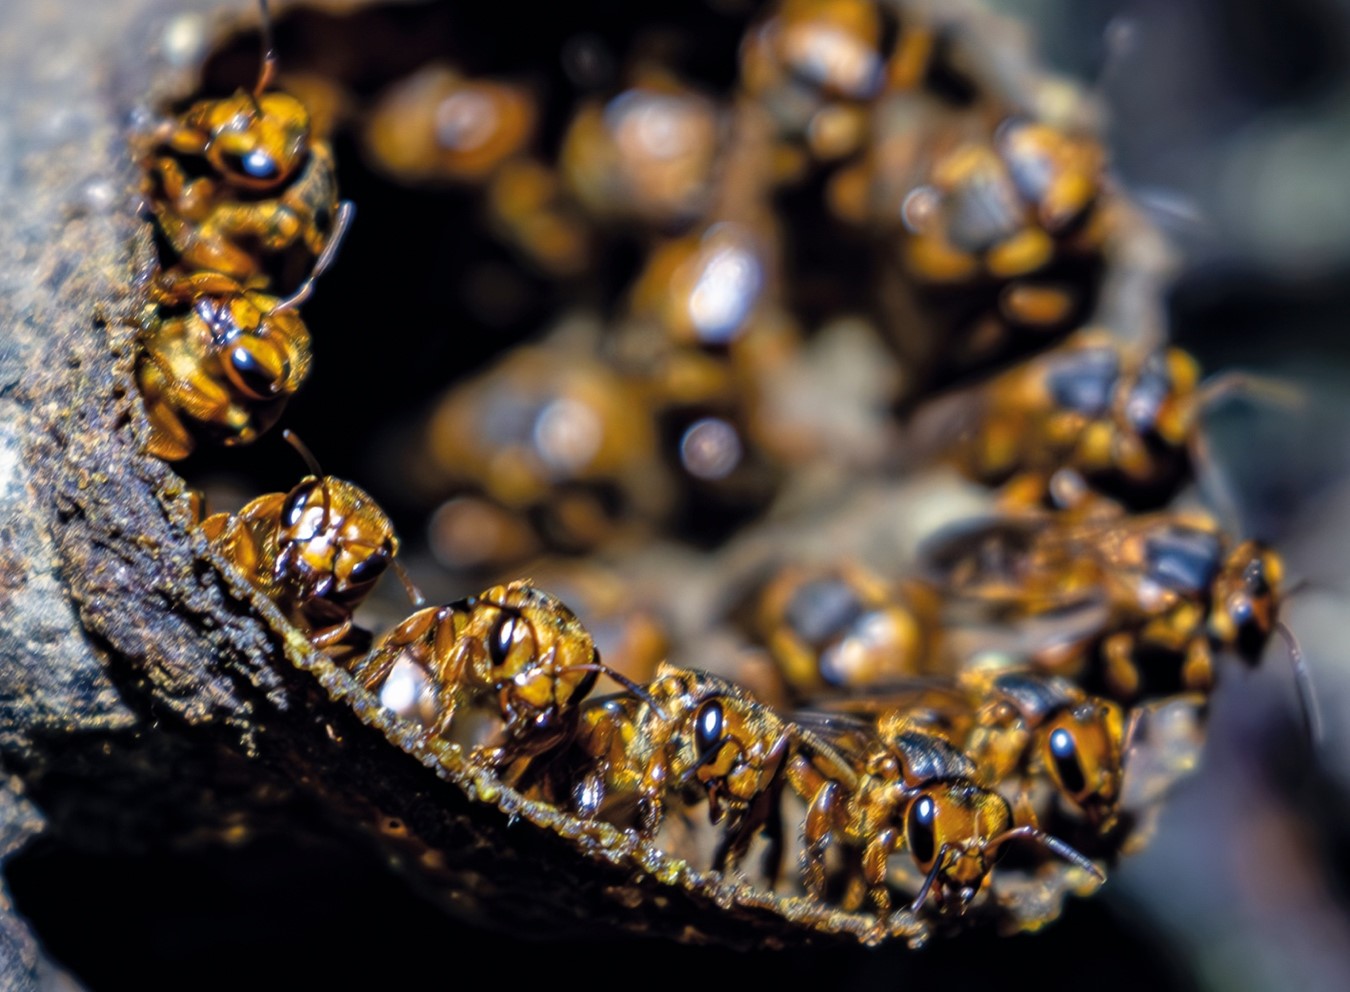 Especies de abejas